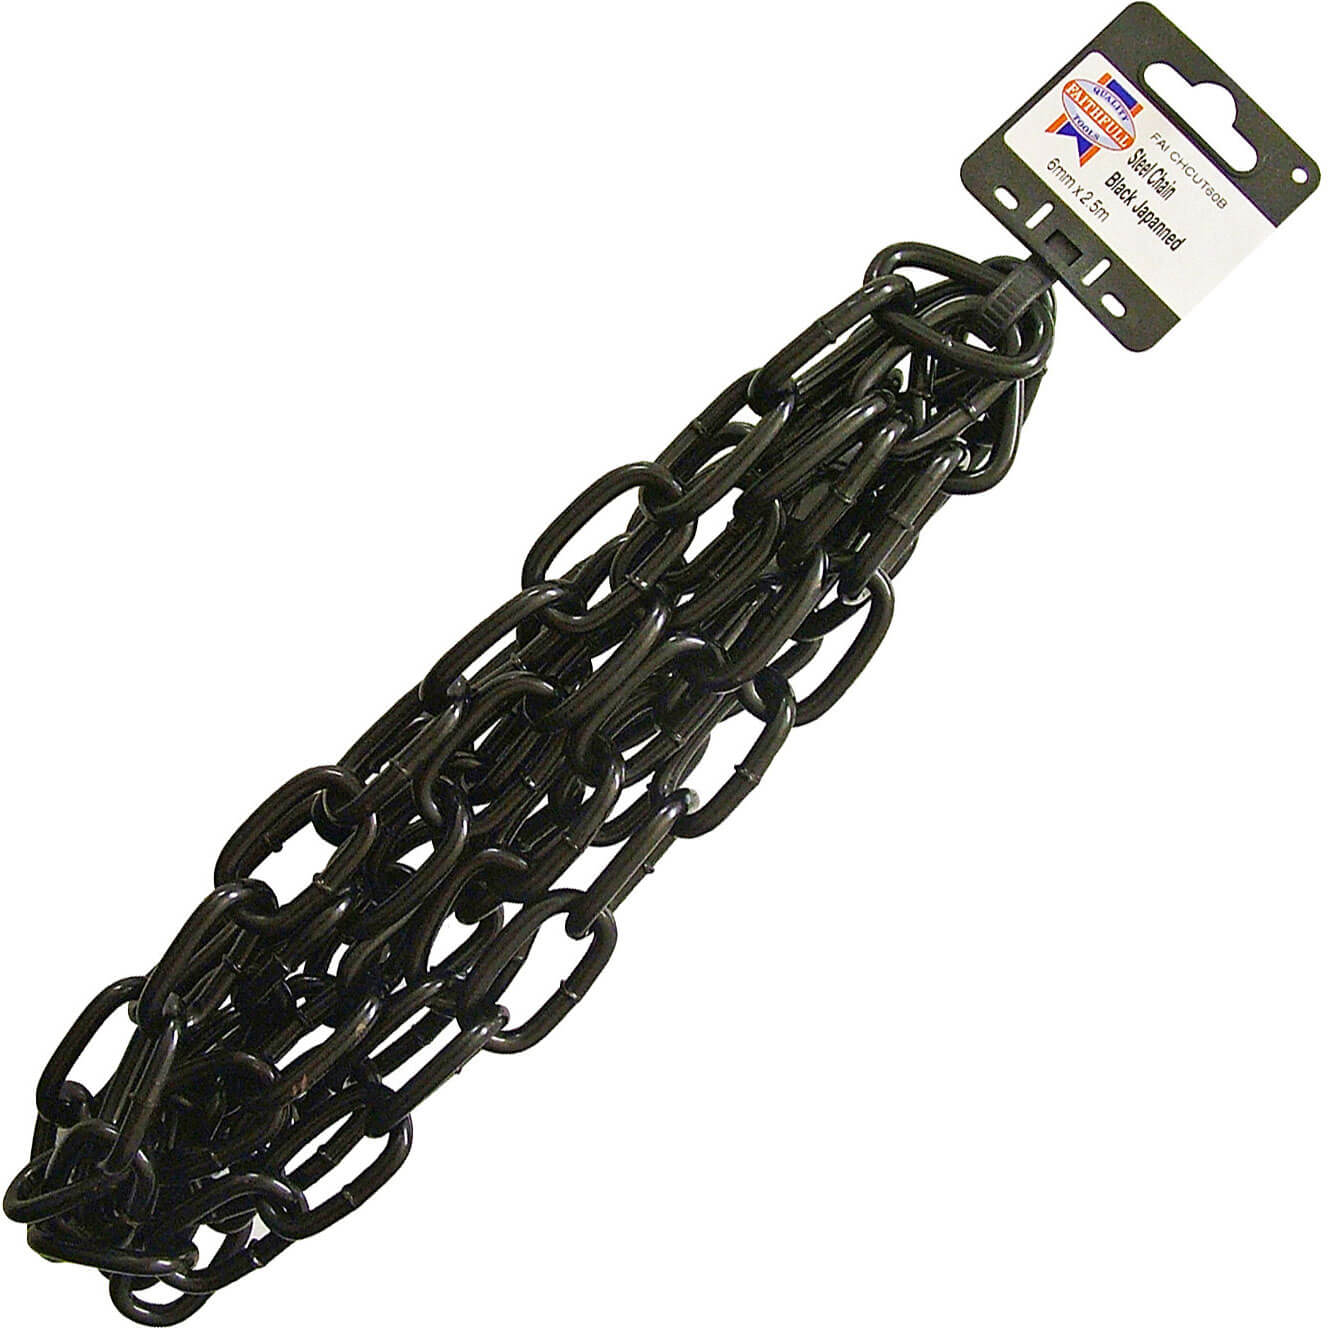 Image of Faithfull Black Japanned Chain Black 6mm 2.5m